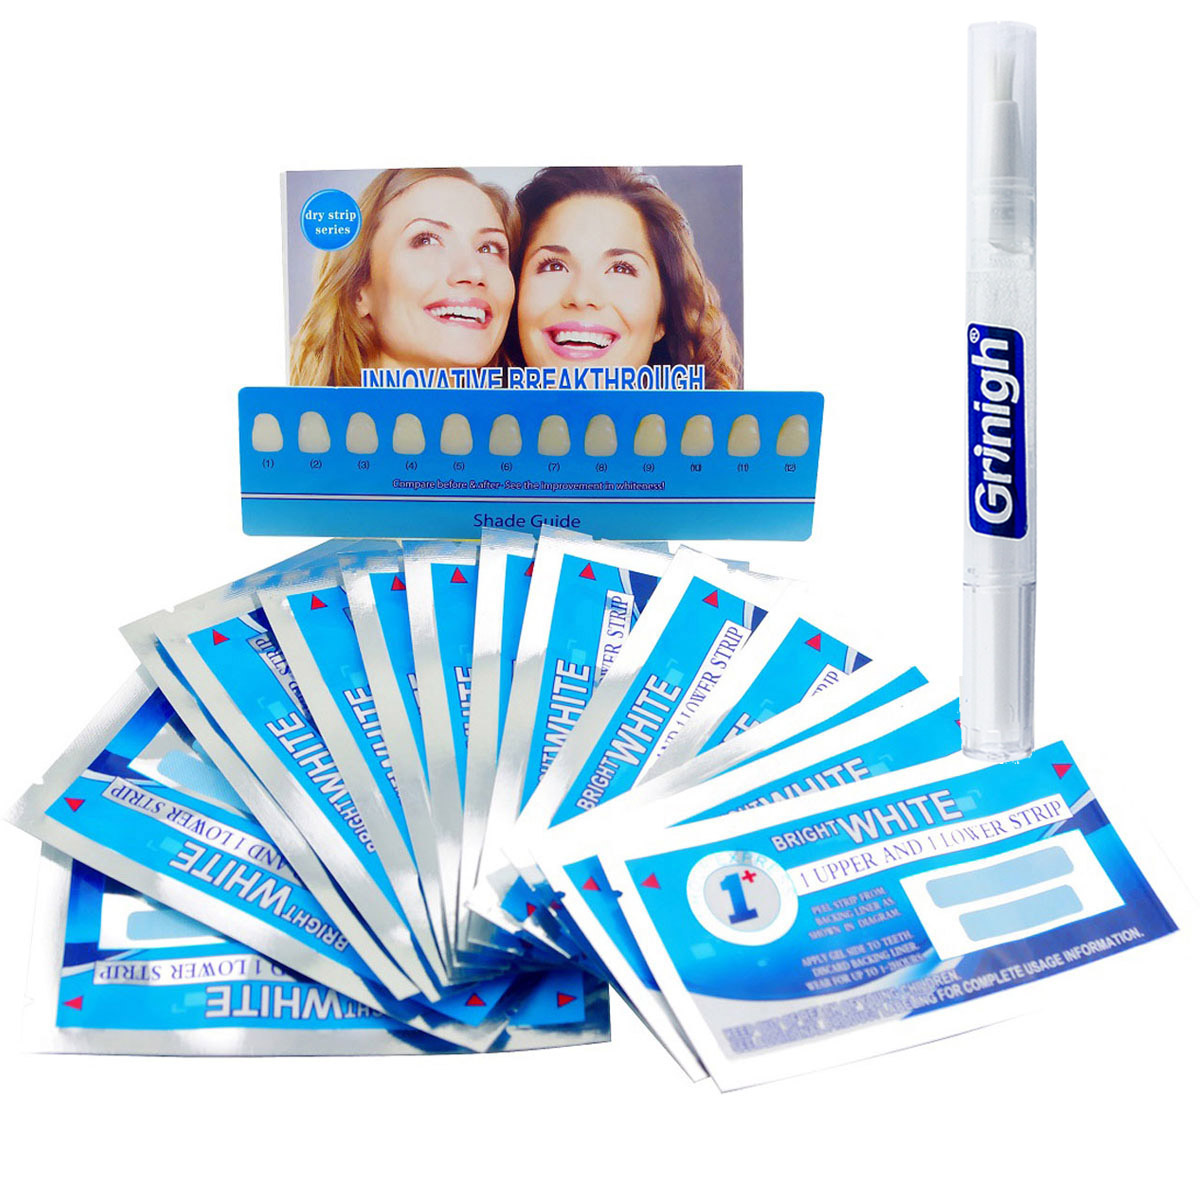 Grin365 Ultra Thin Teeth whitening strips met verse munt Flavor - 7 Daagse behandeling